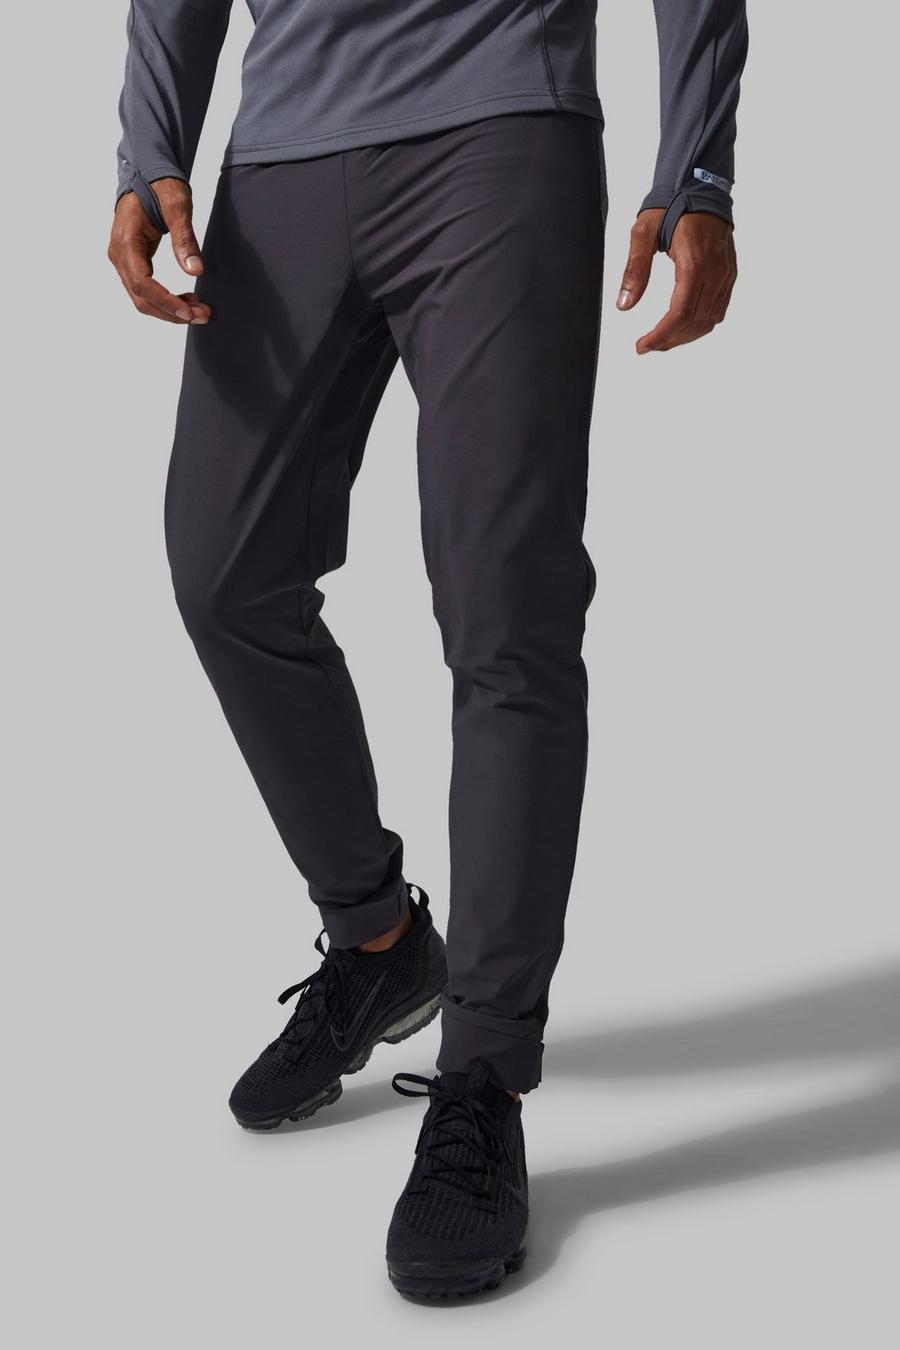 Pantaloni tuta affusolati Man Active riflettenti in velcro, Charcoal grigio